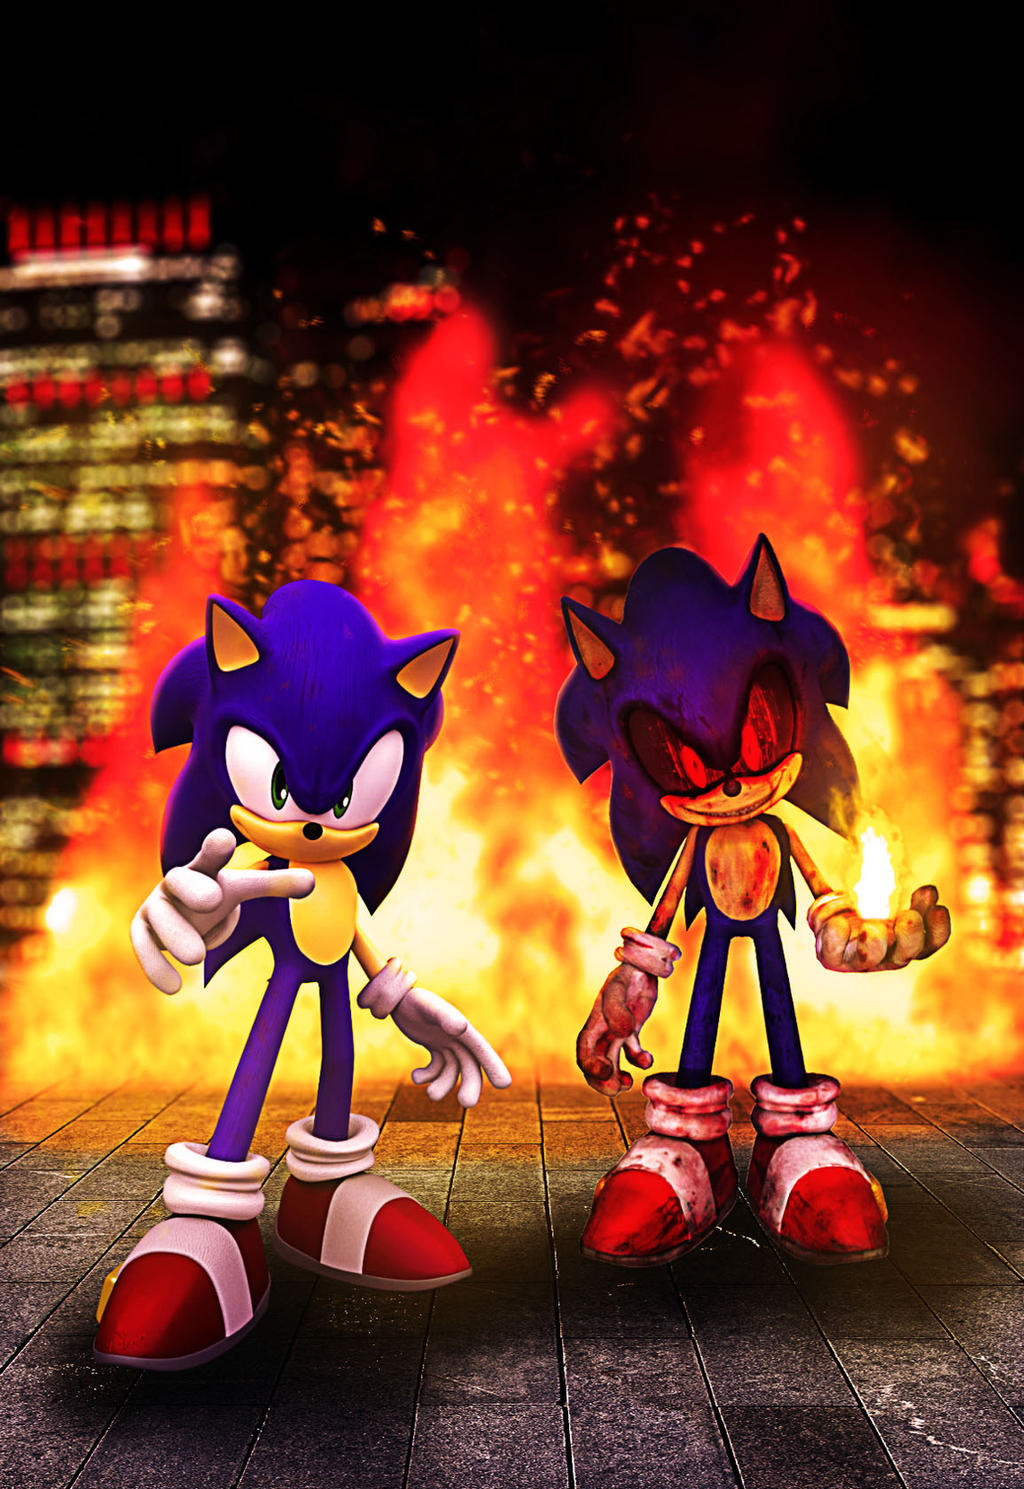 Sonic.exe one last round rework : r/SonicEXE